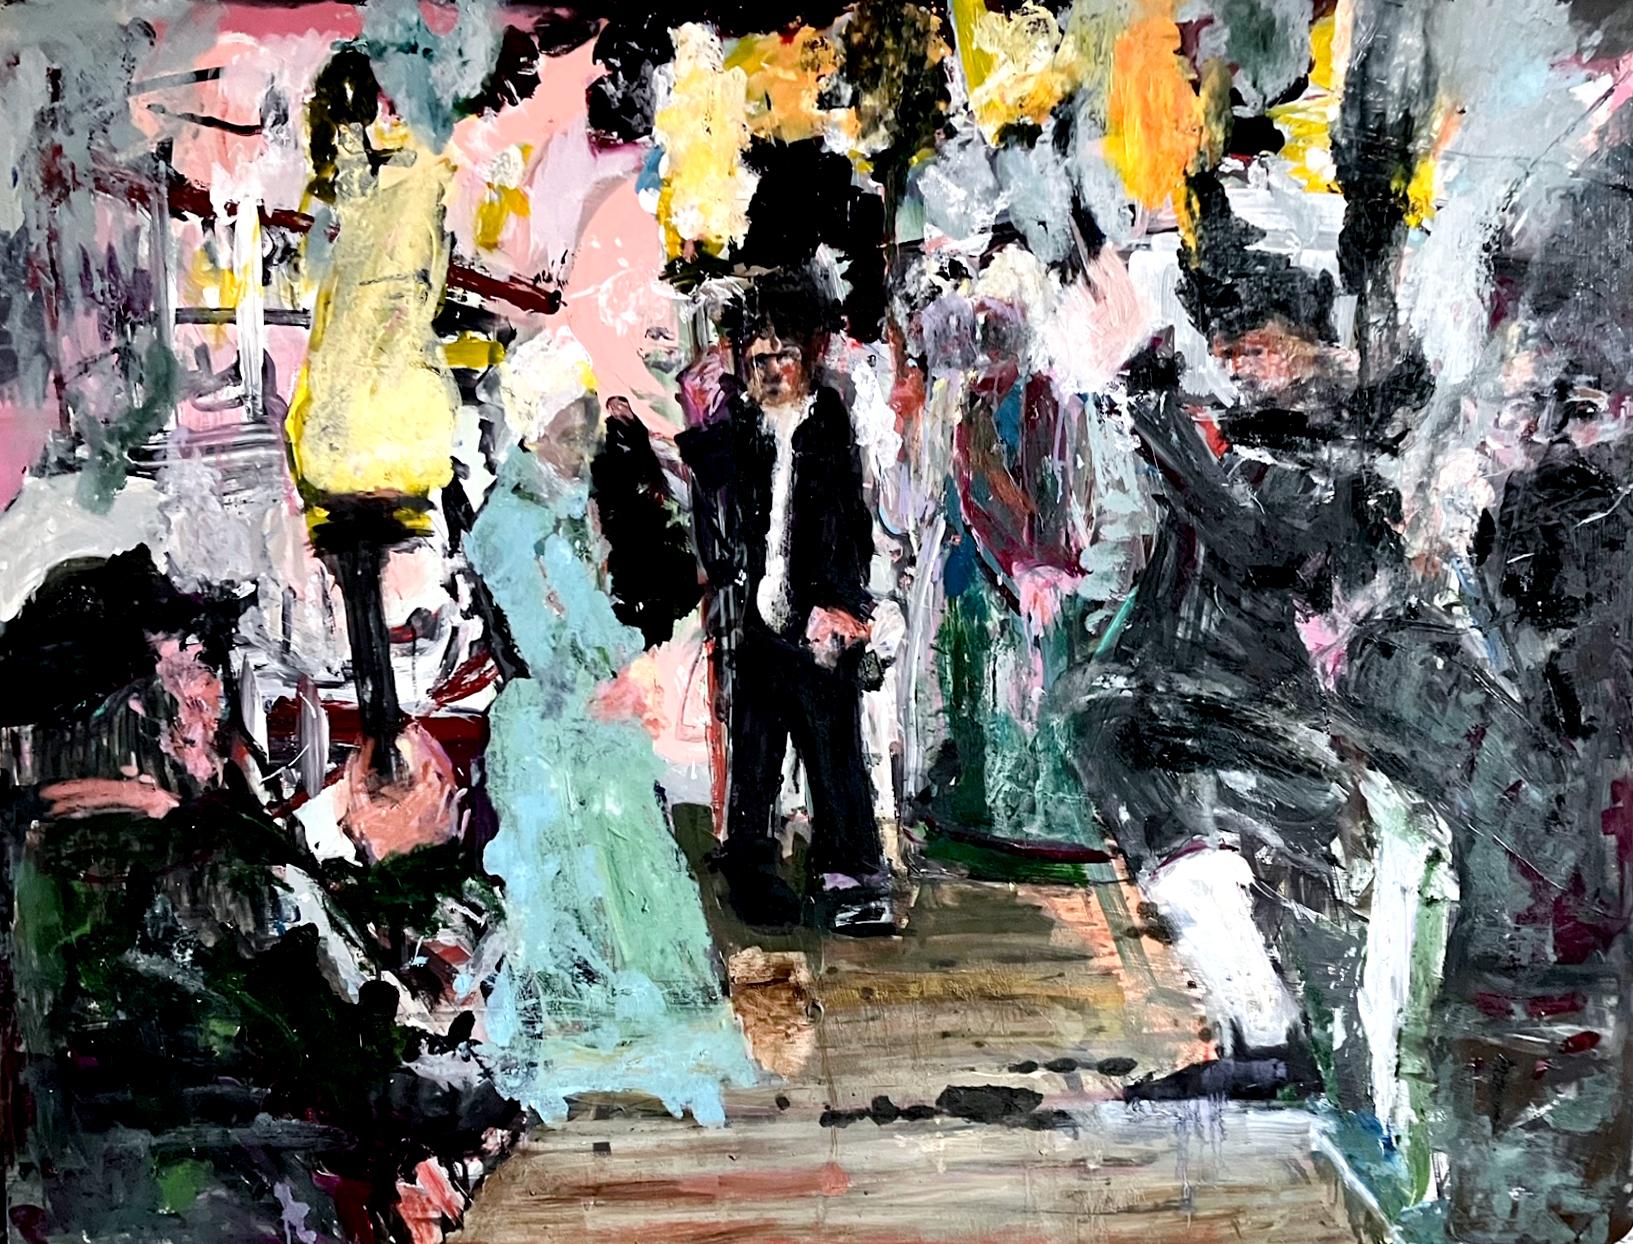 Abstract Painting C. Dimitri - Dans the Gloaming, groupe de figures abstraites et colorées